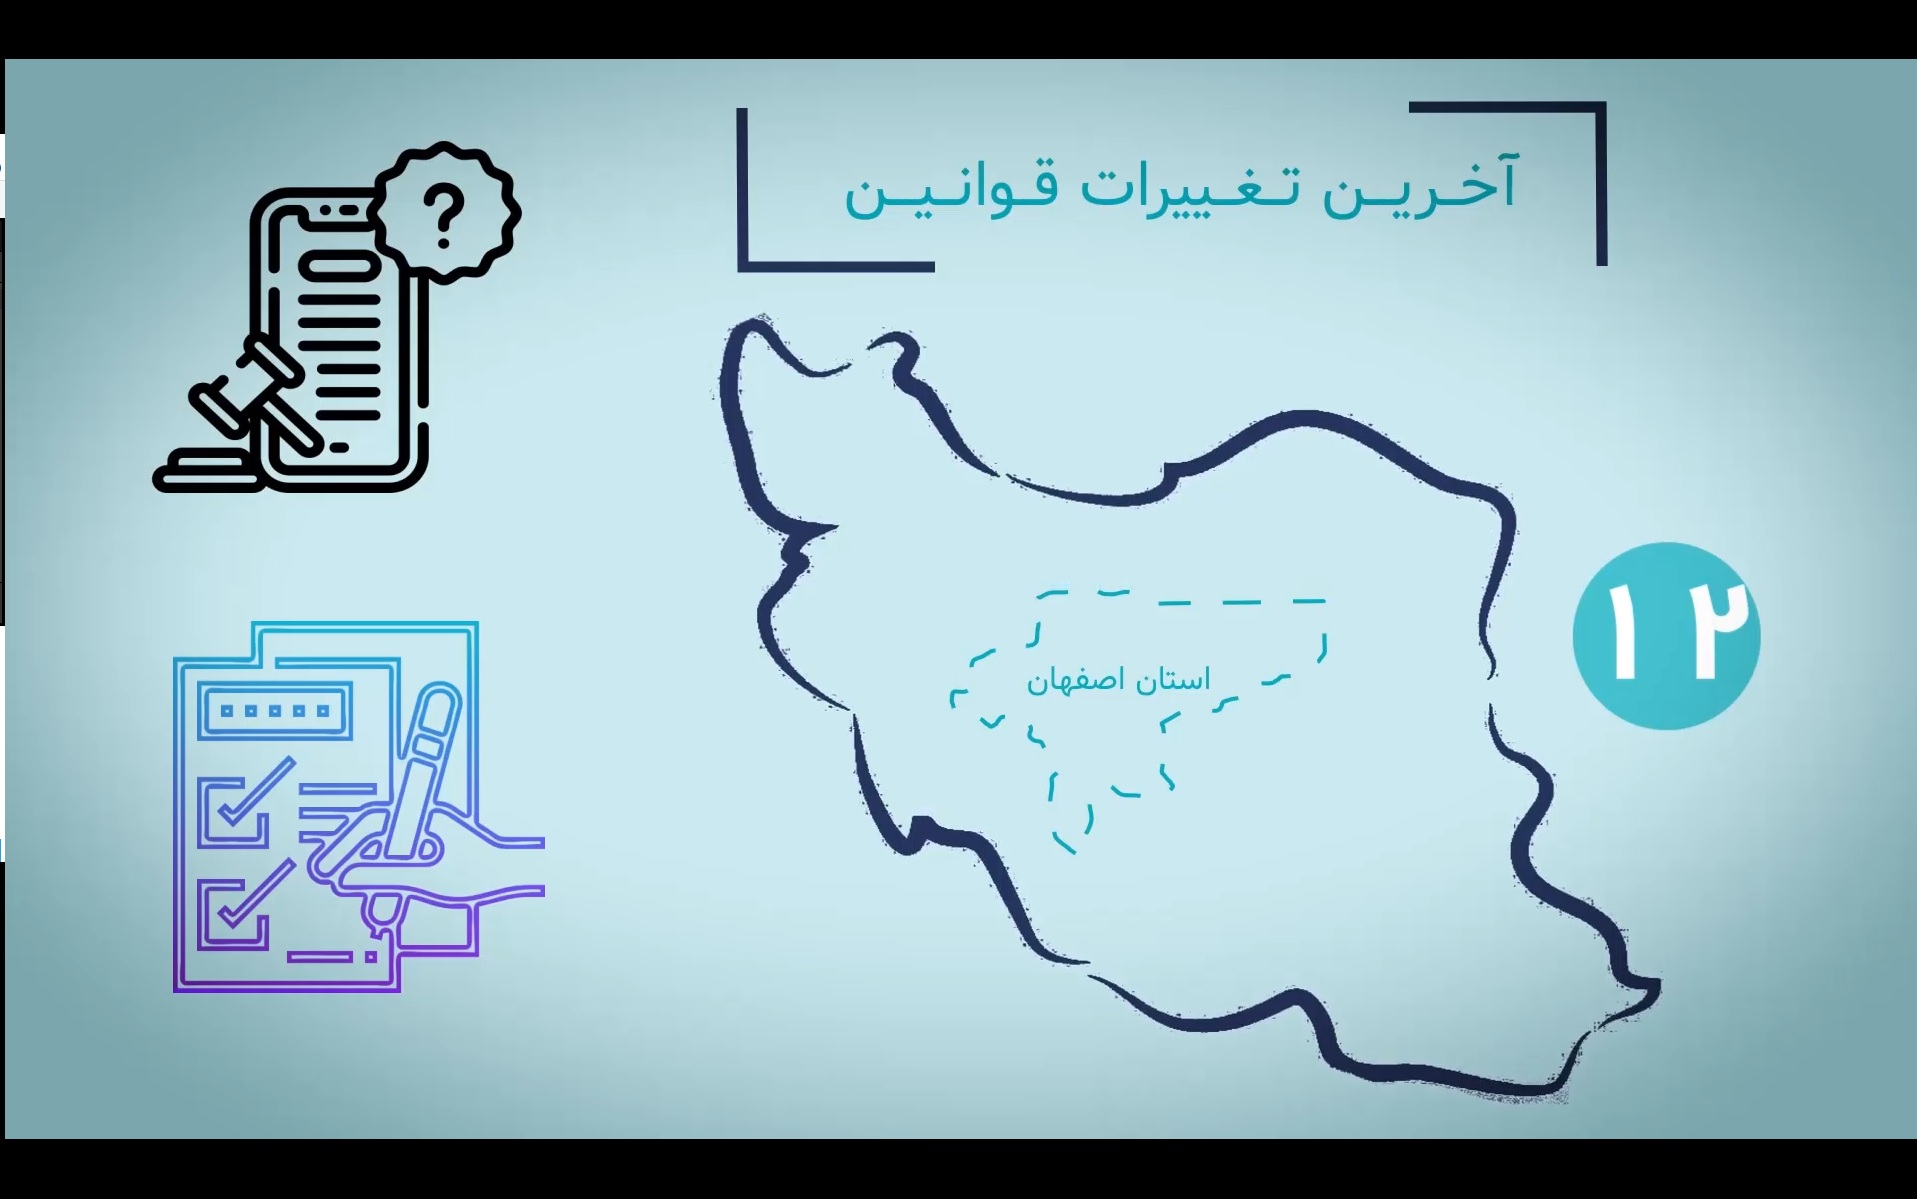 قسمت سوم موشن گرافی خدمات اتاق بازرگانی اصفهان ،نسل سوم